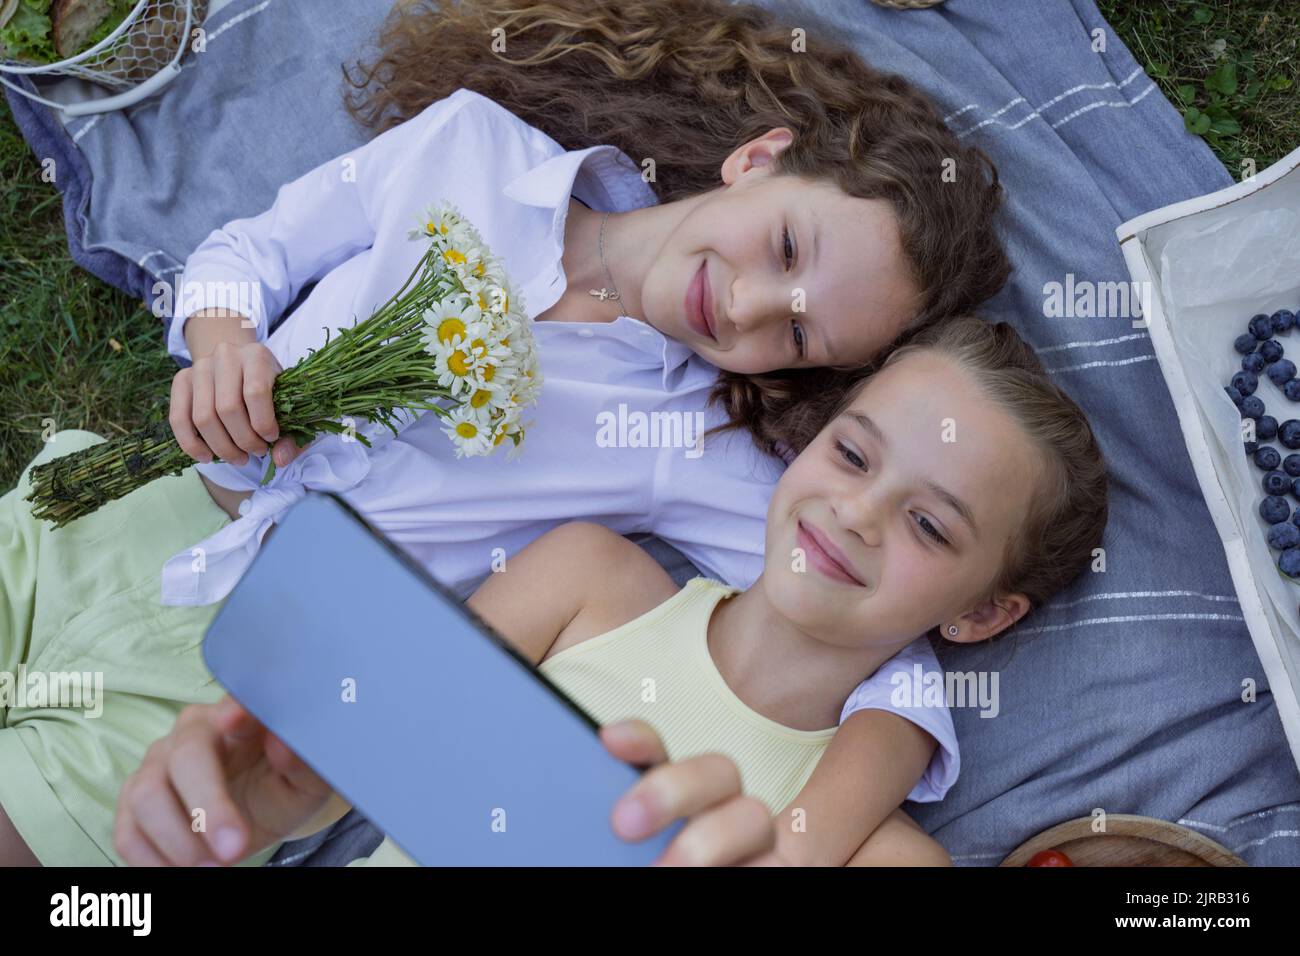 Des filles souriantes emmenaient le selfie sur un smartphone allongé dans un parc Banque D'Images